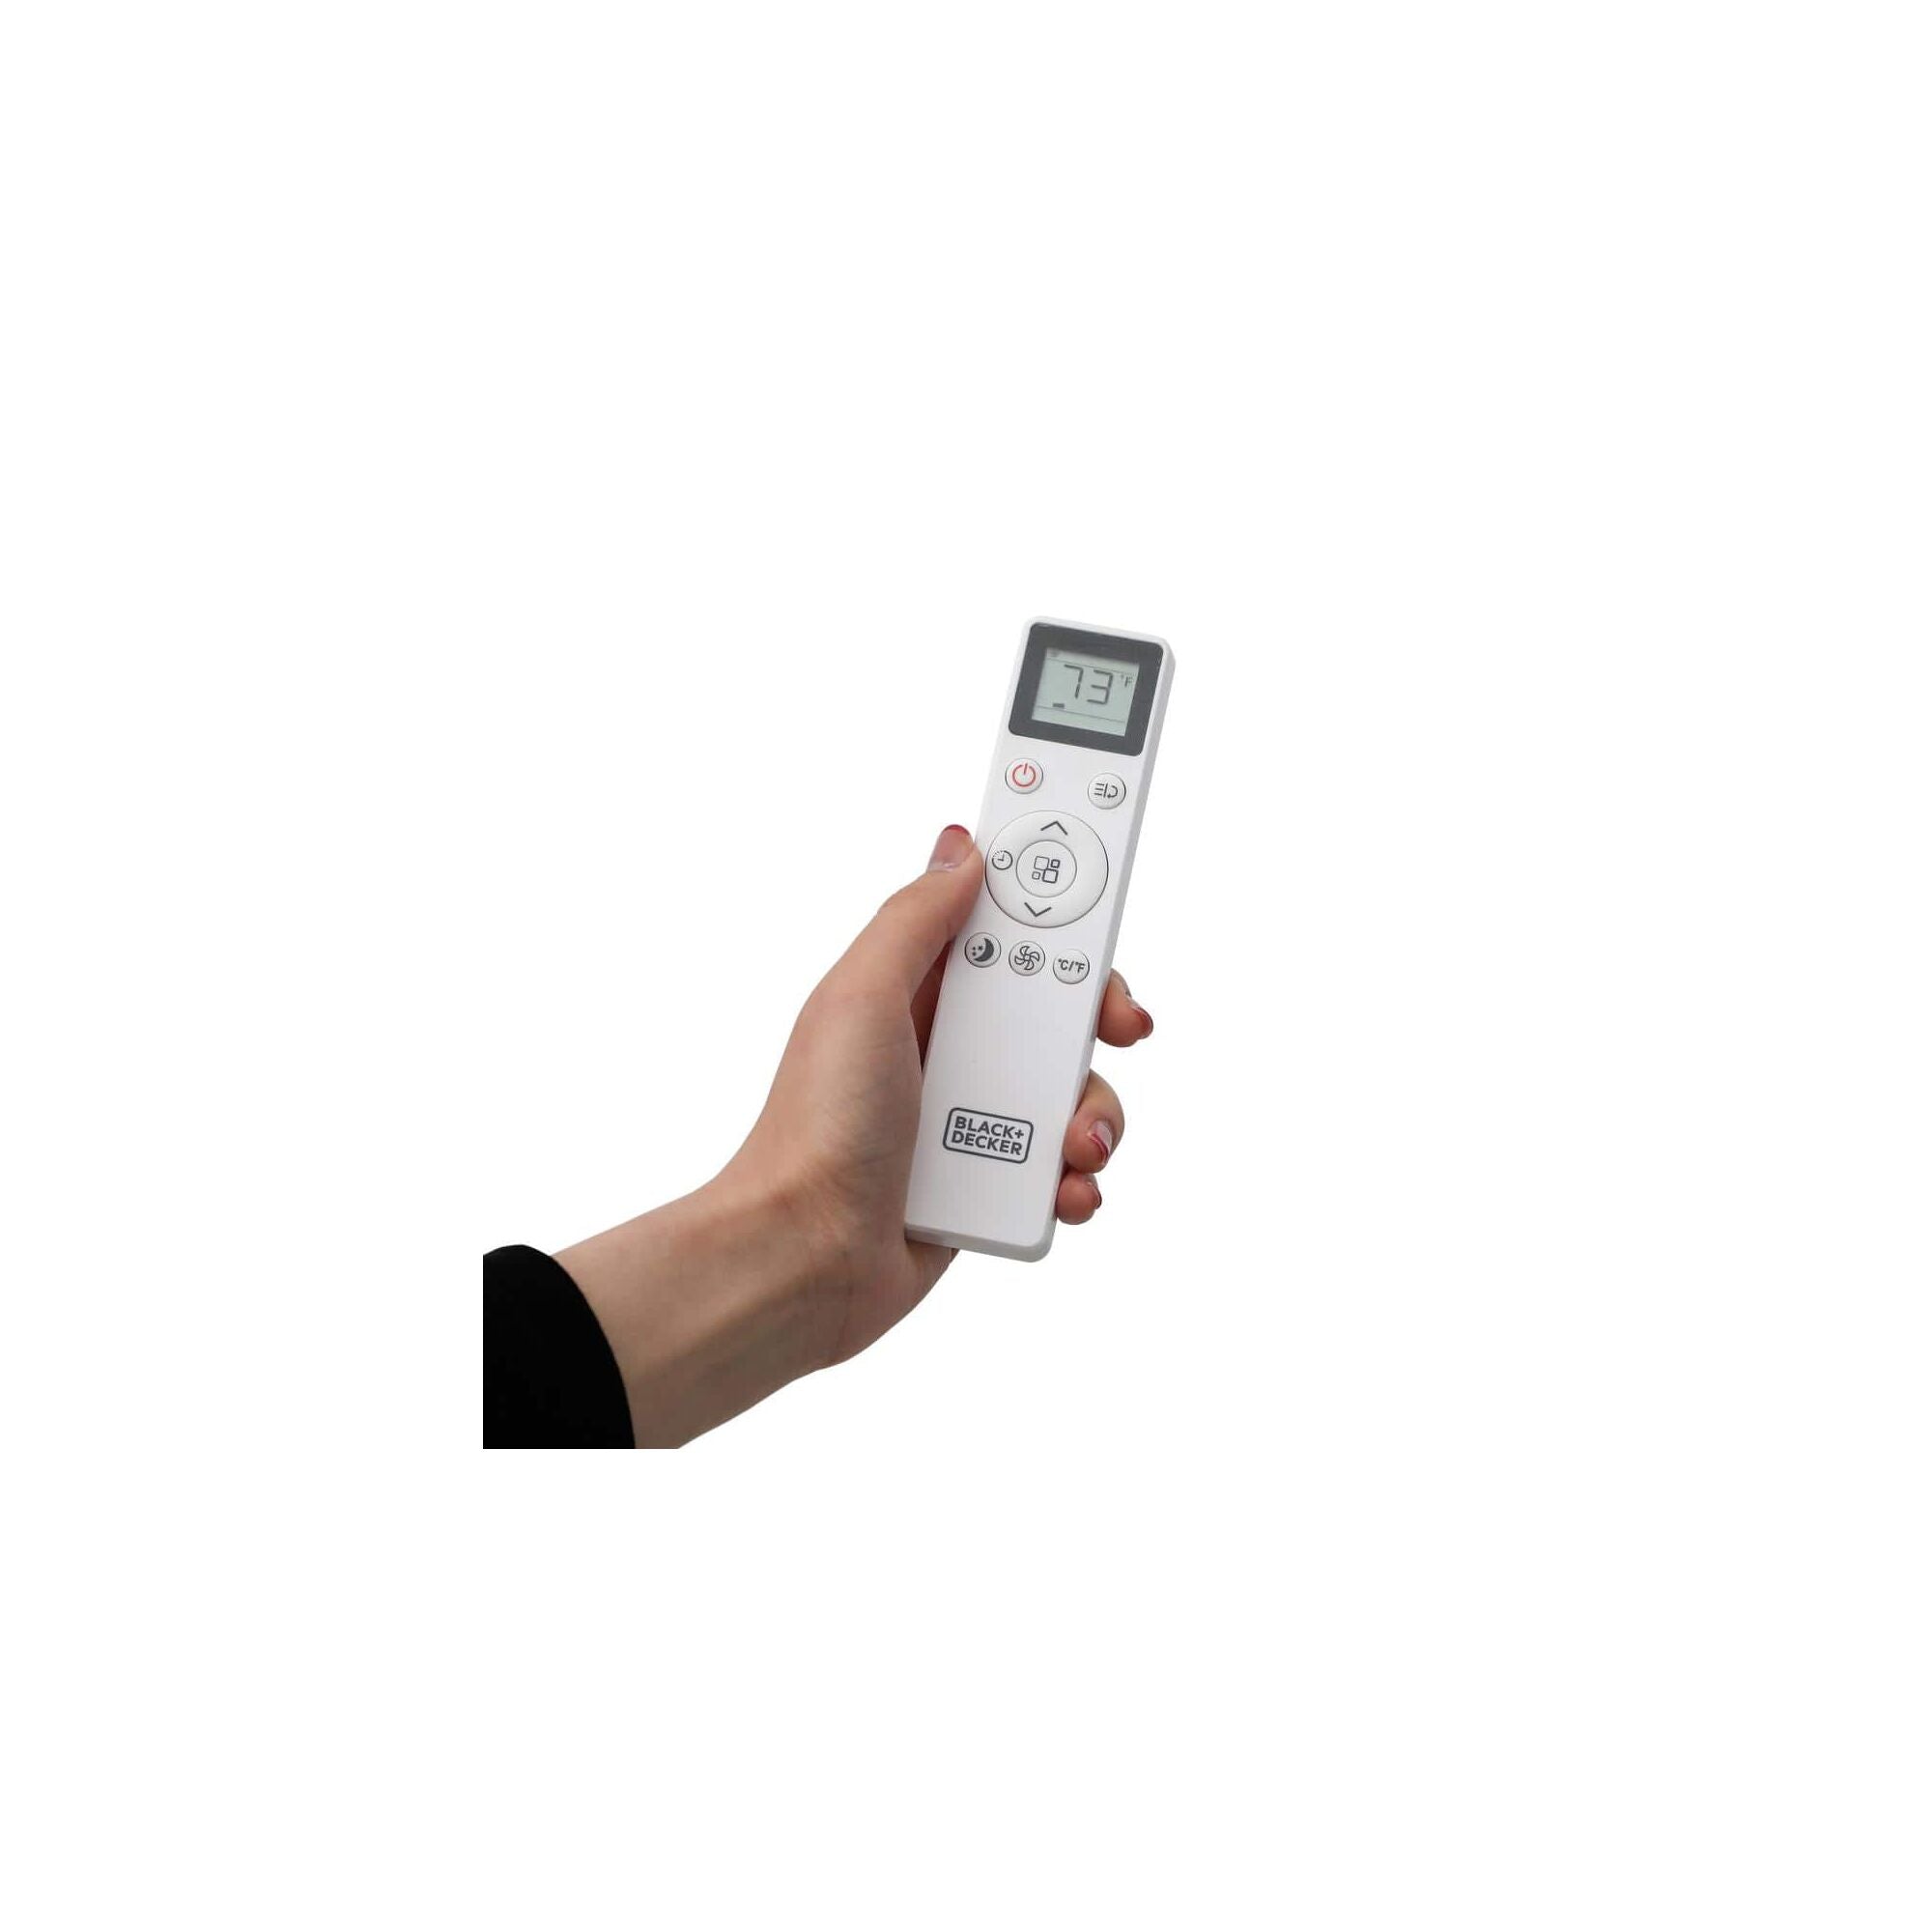 Black Decker Portable Air Conditioner With Heat 8000 BTU White